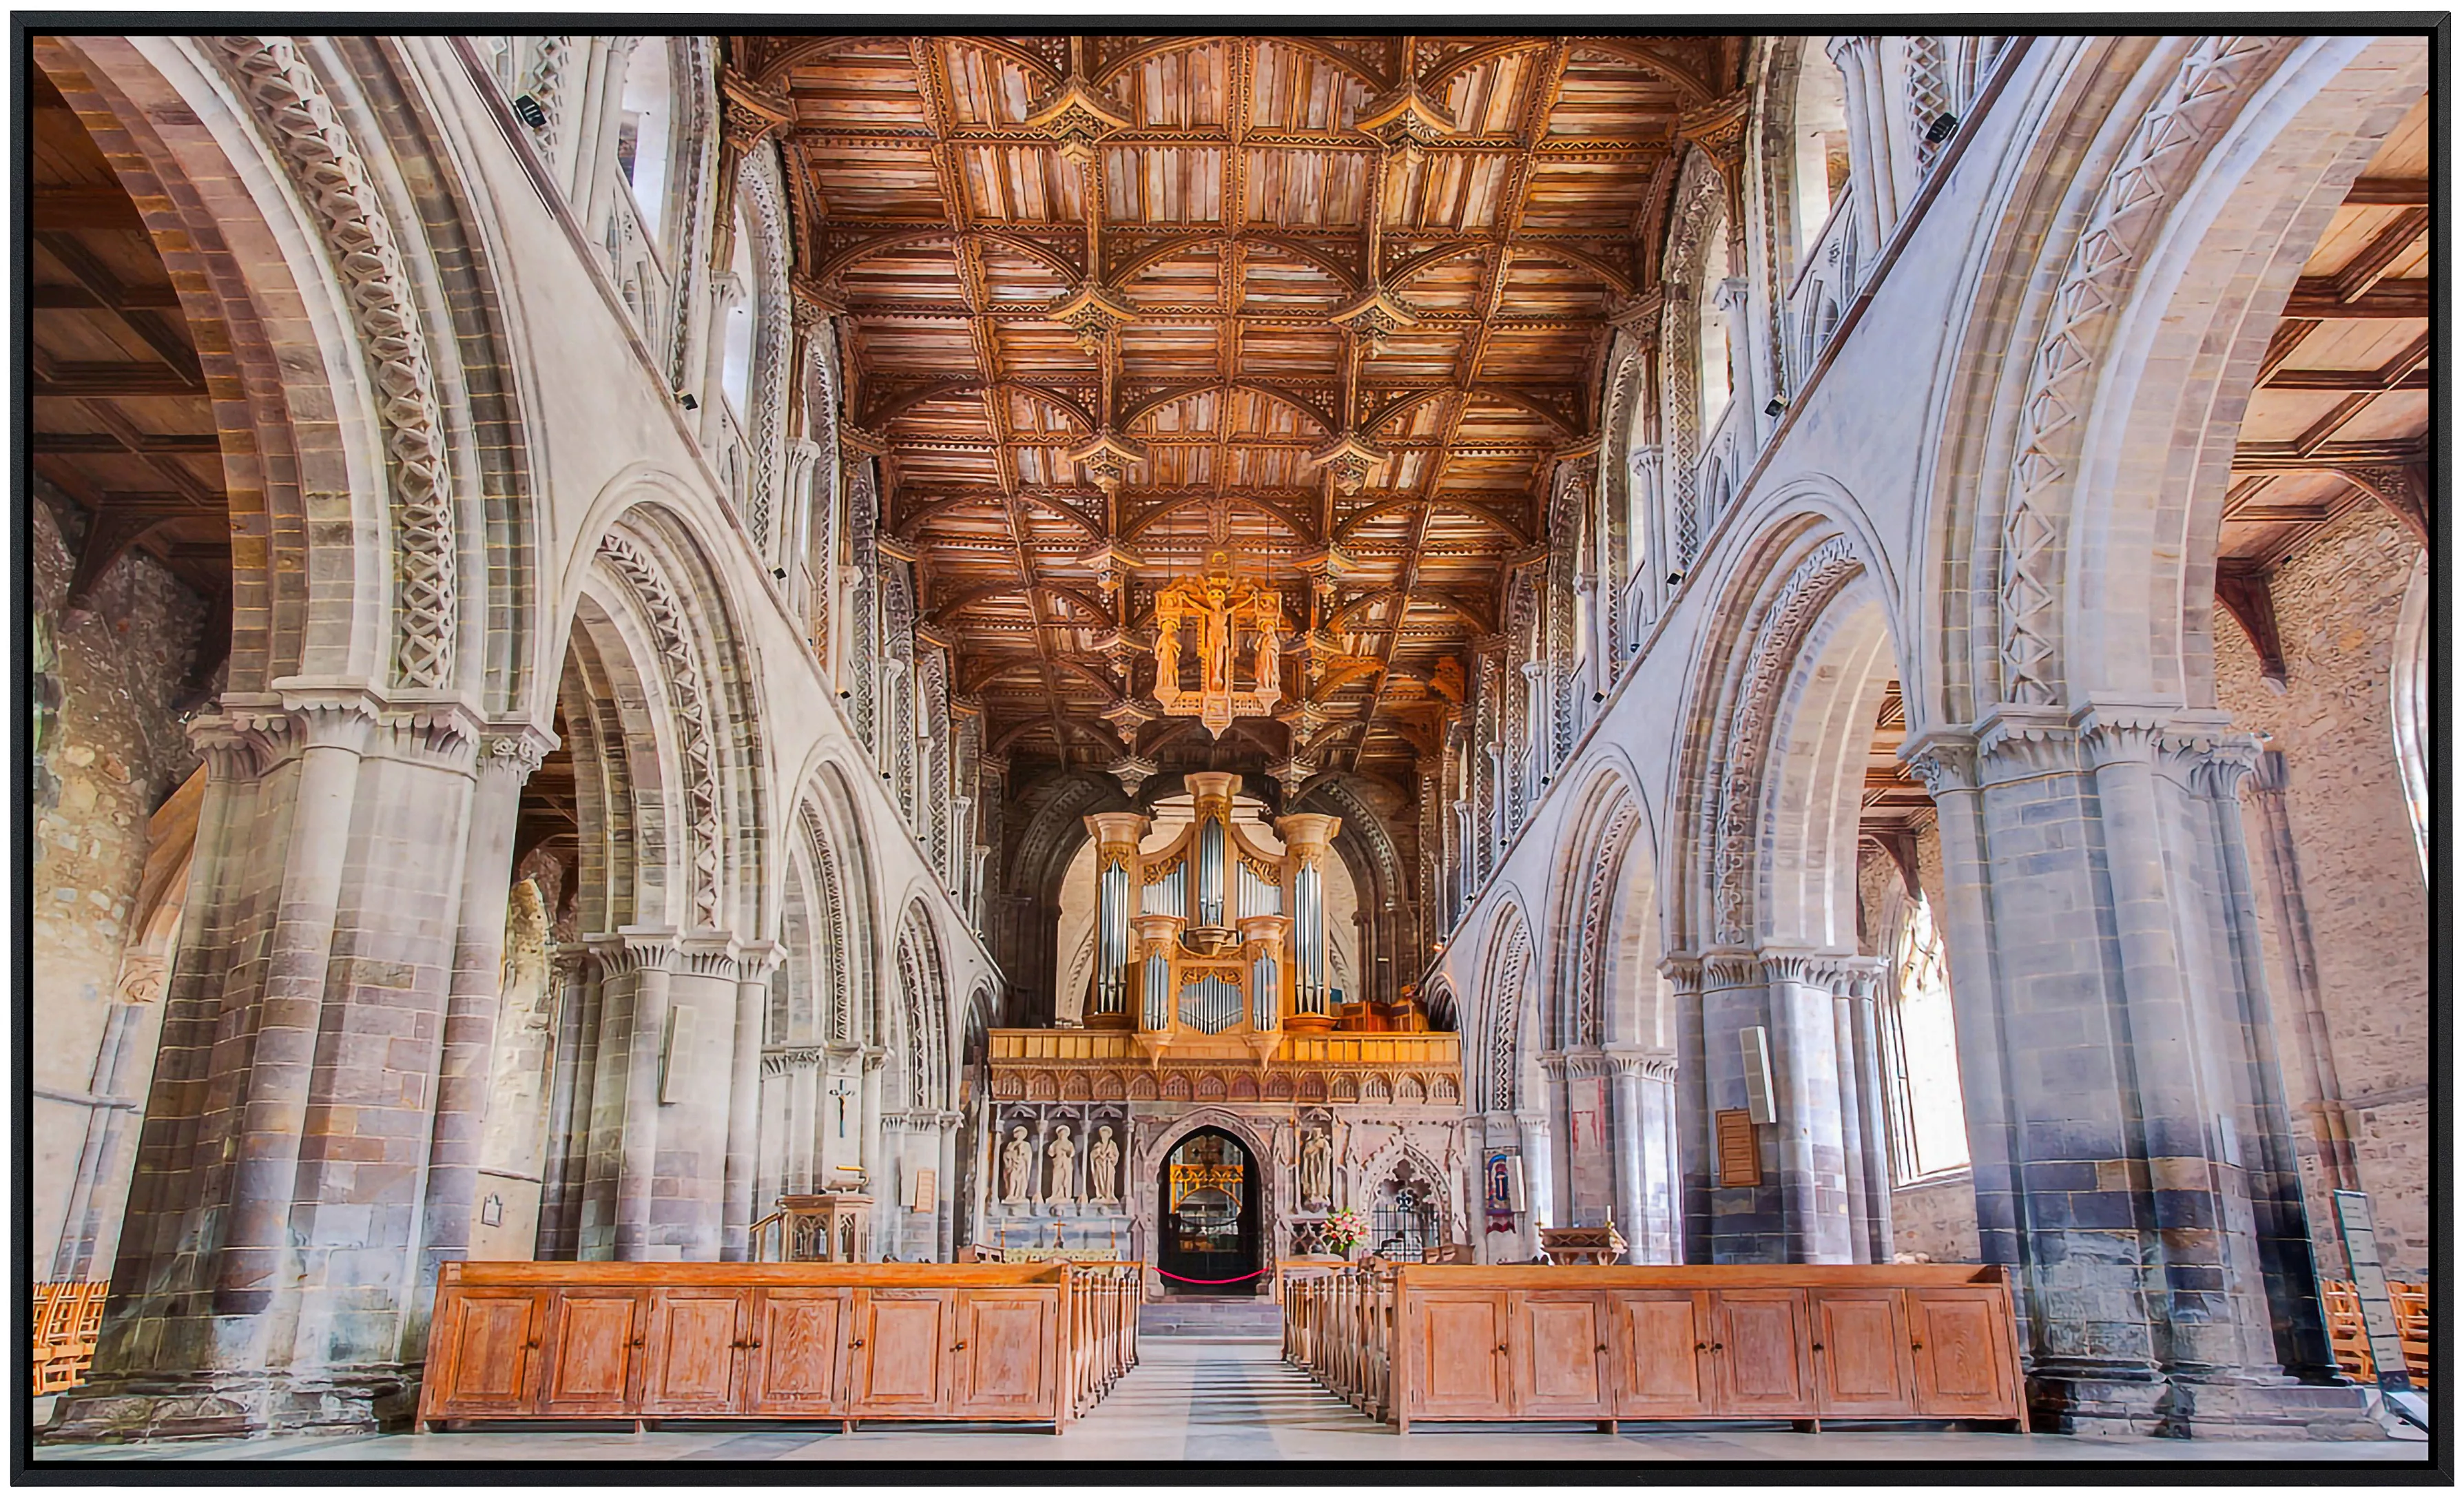 Papermoon Infrarotheizung »St. Davids Kathedrale«, sehr angenehme Strahlung günstig online kaufen